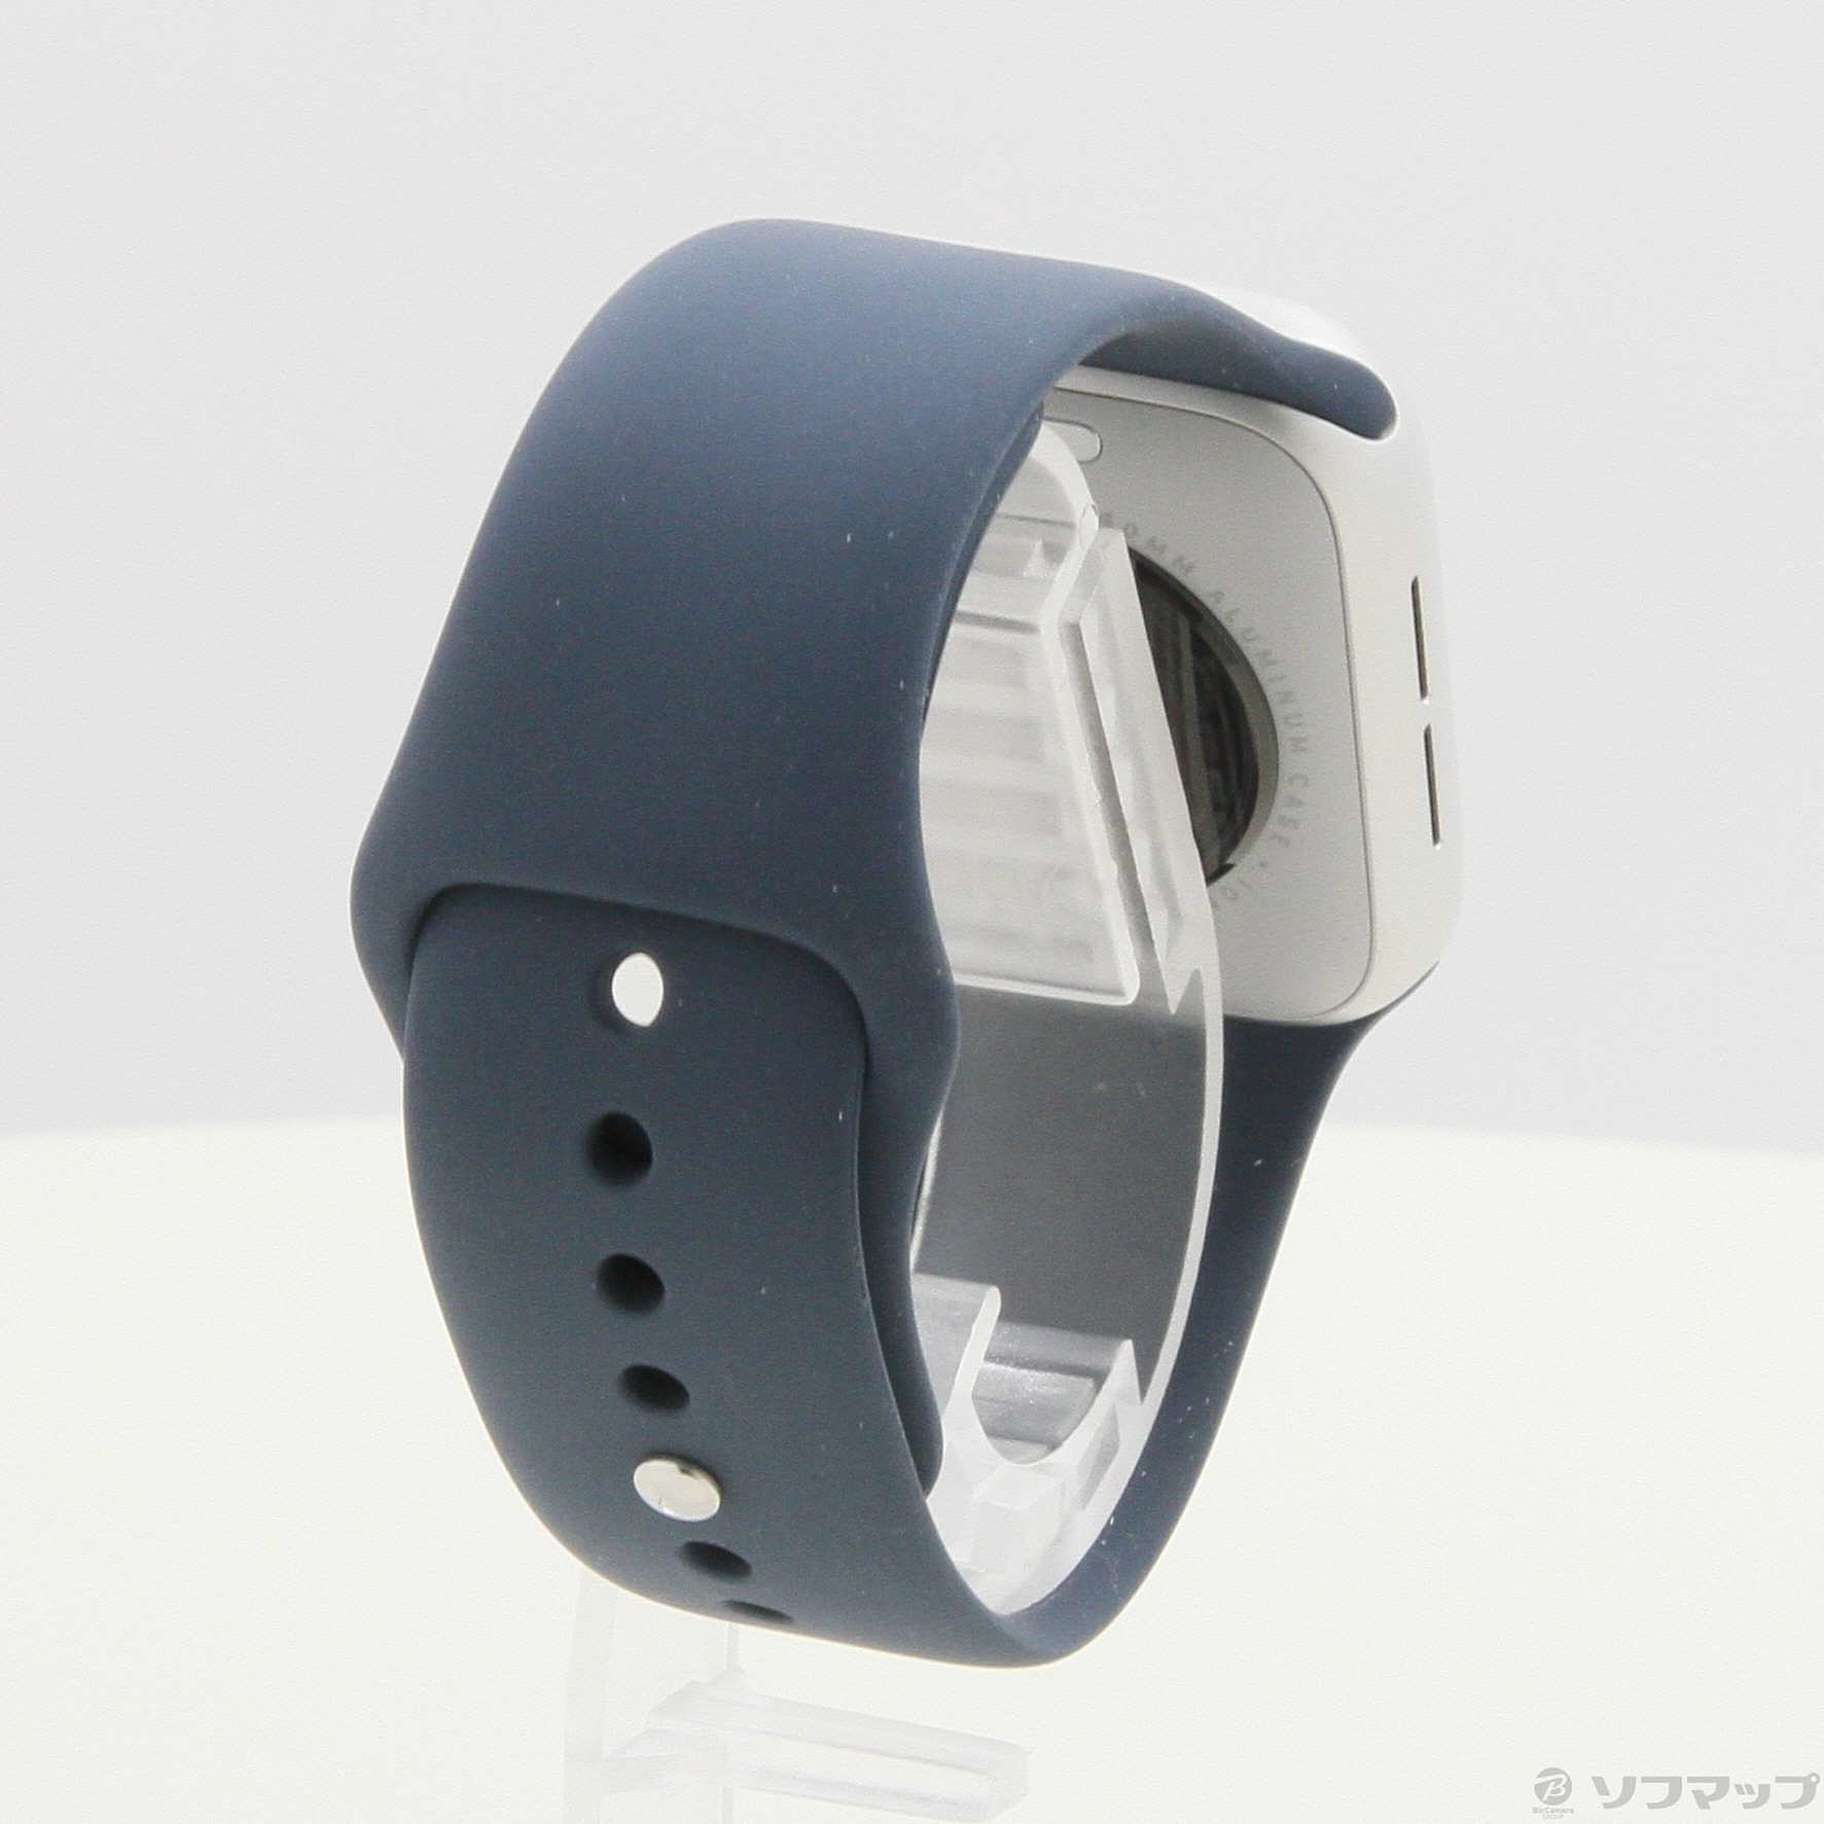 Apple Watch SE 第2世代 GPS 40mm シルバーアルミニウムケース ストームブルースポーツバンド